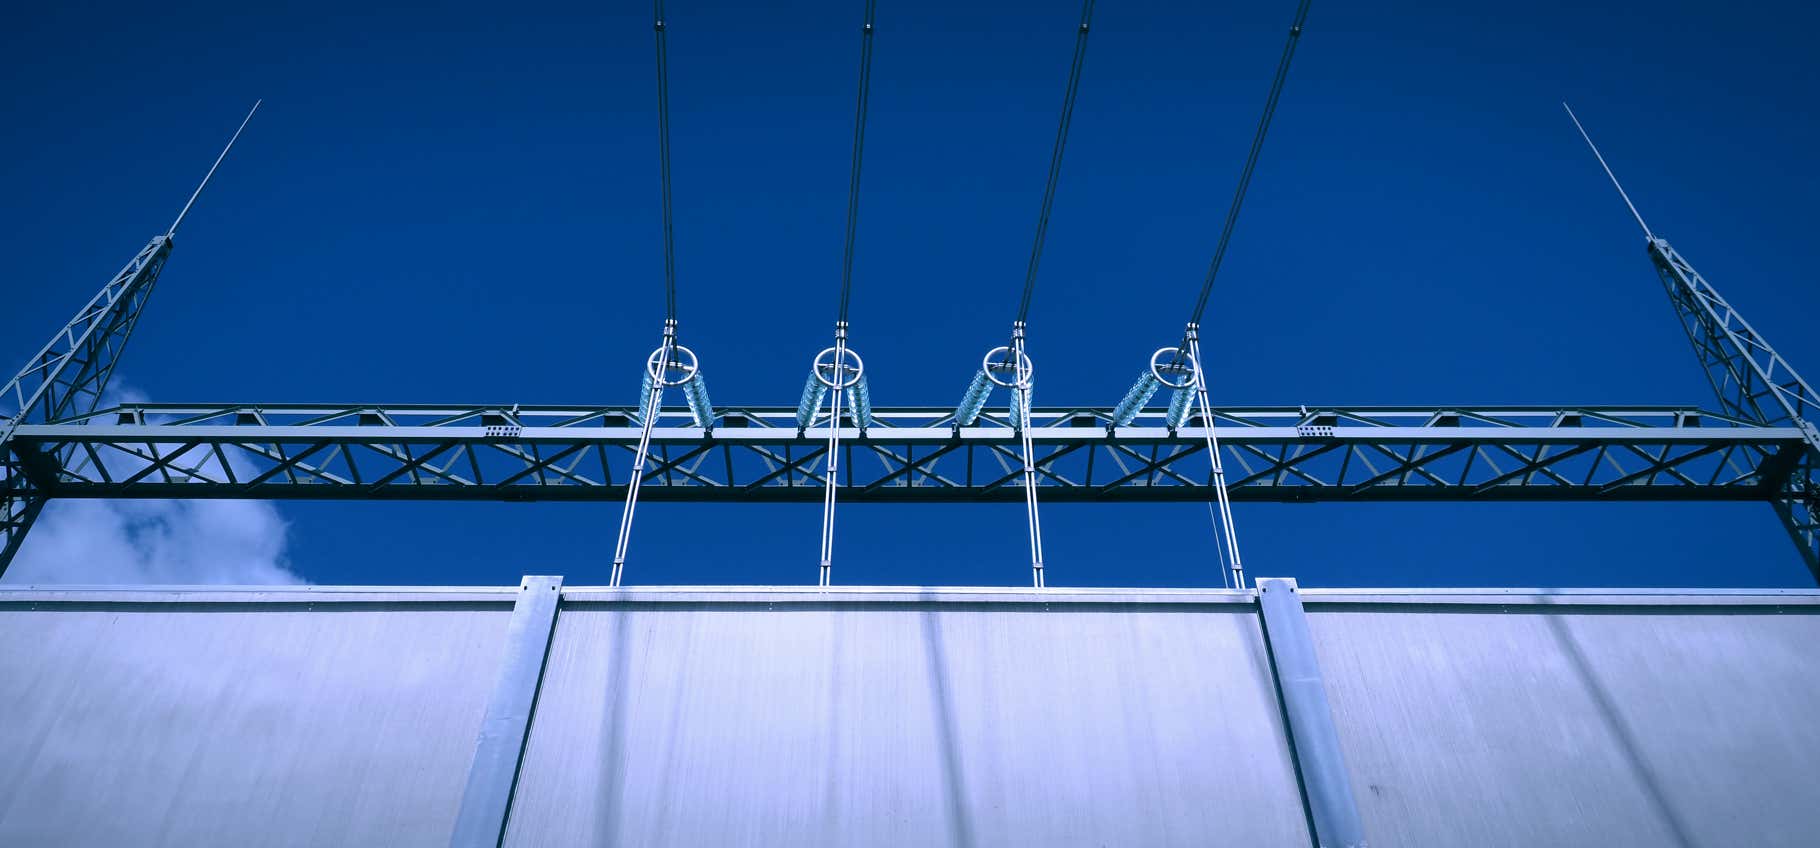 Foto Hochspannungsfreilandleitungen, Zuleitungsanlage Oel-Transformator Umspannwerk, transparente Hochspannungsisolatoren, hoeh Mauer, blauer Himmel